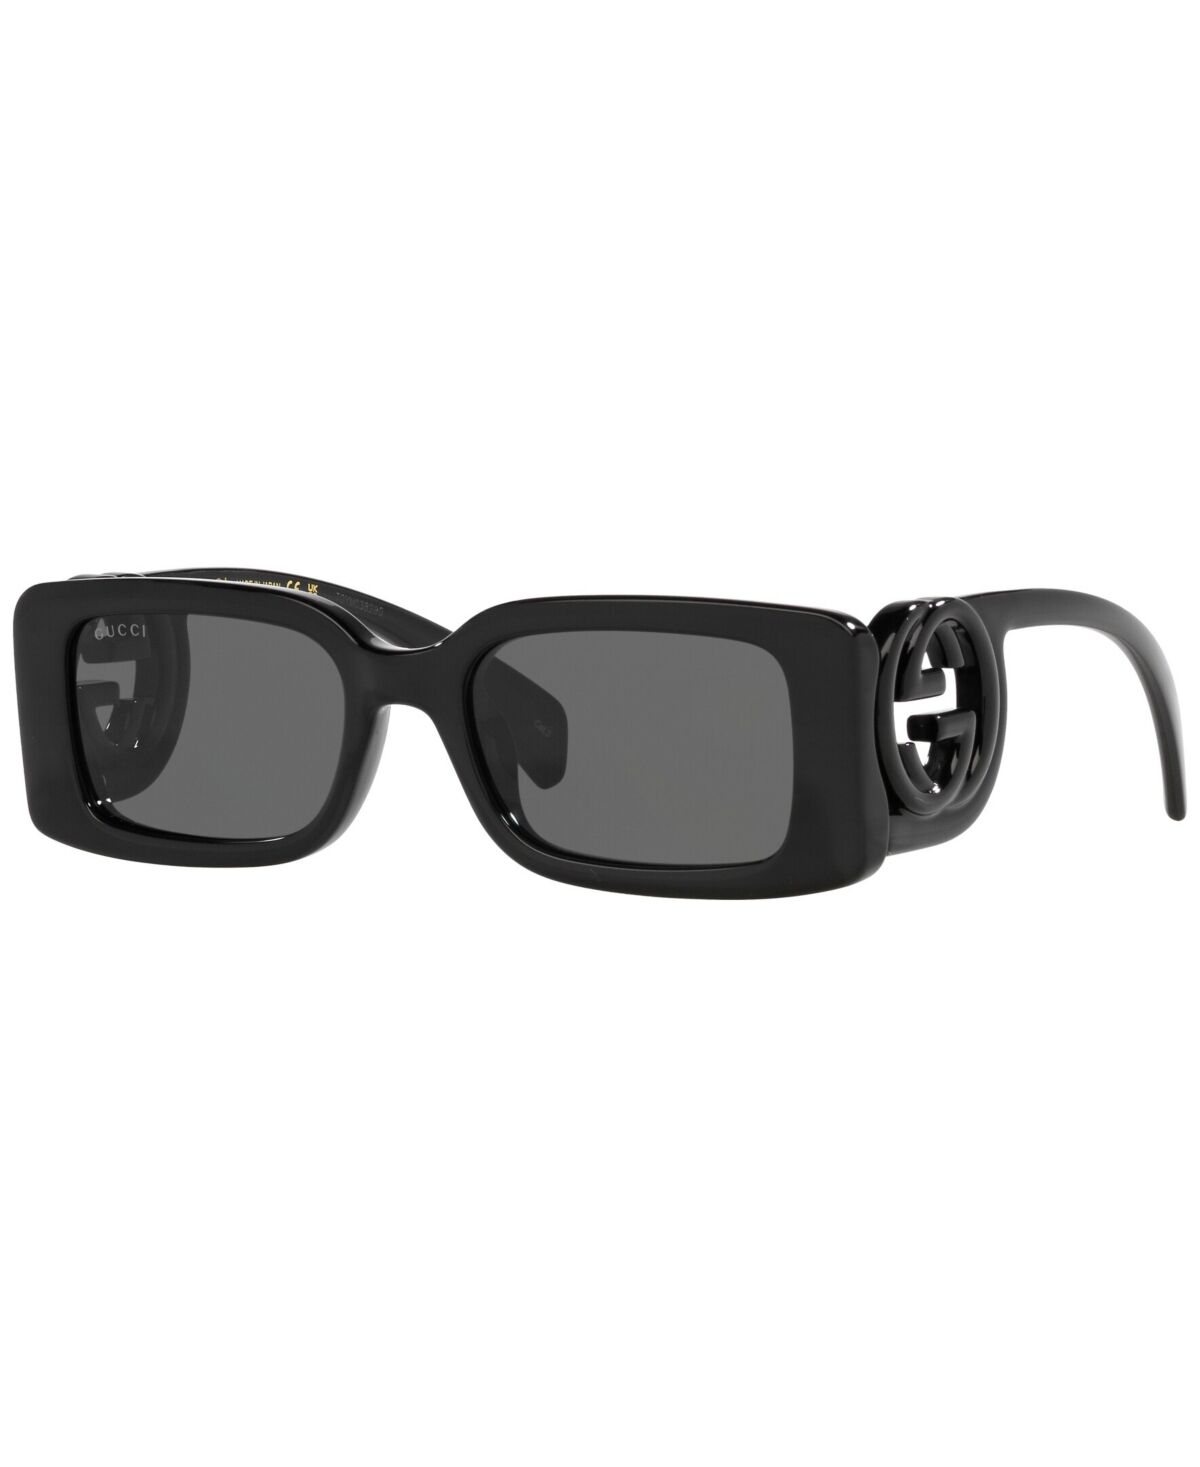 Gucci Women's Sunglasses, GG1325S - Black